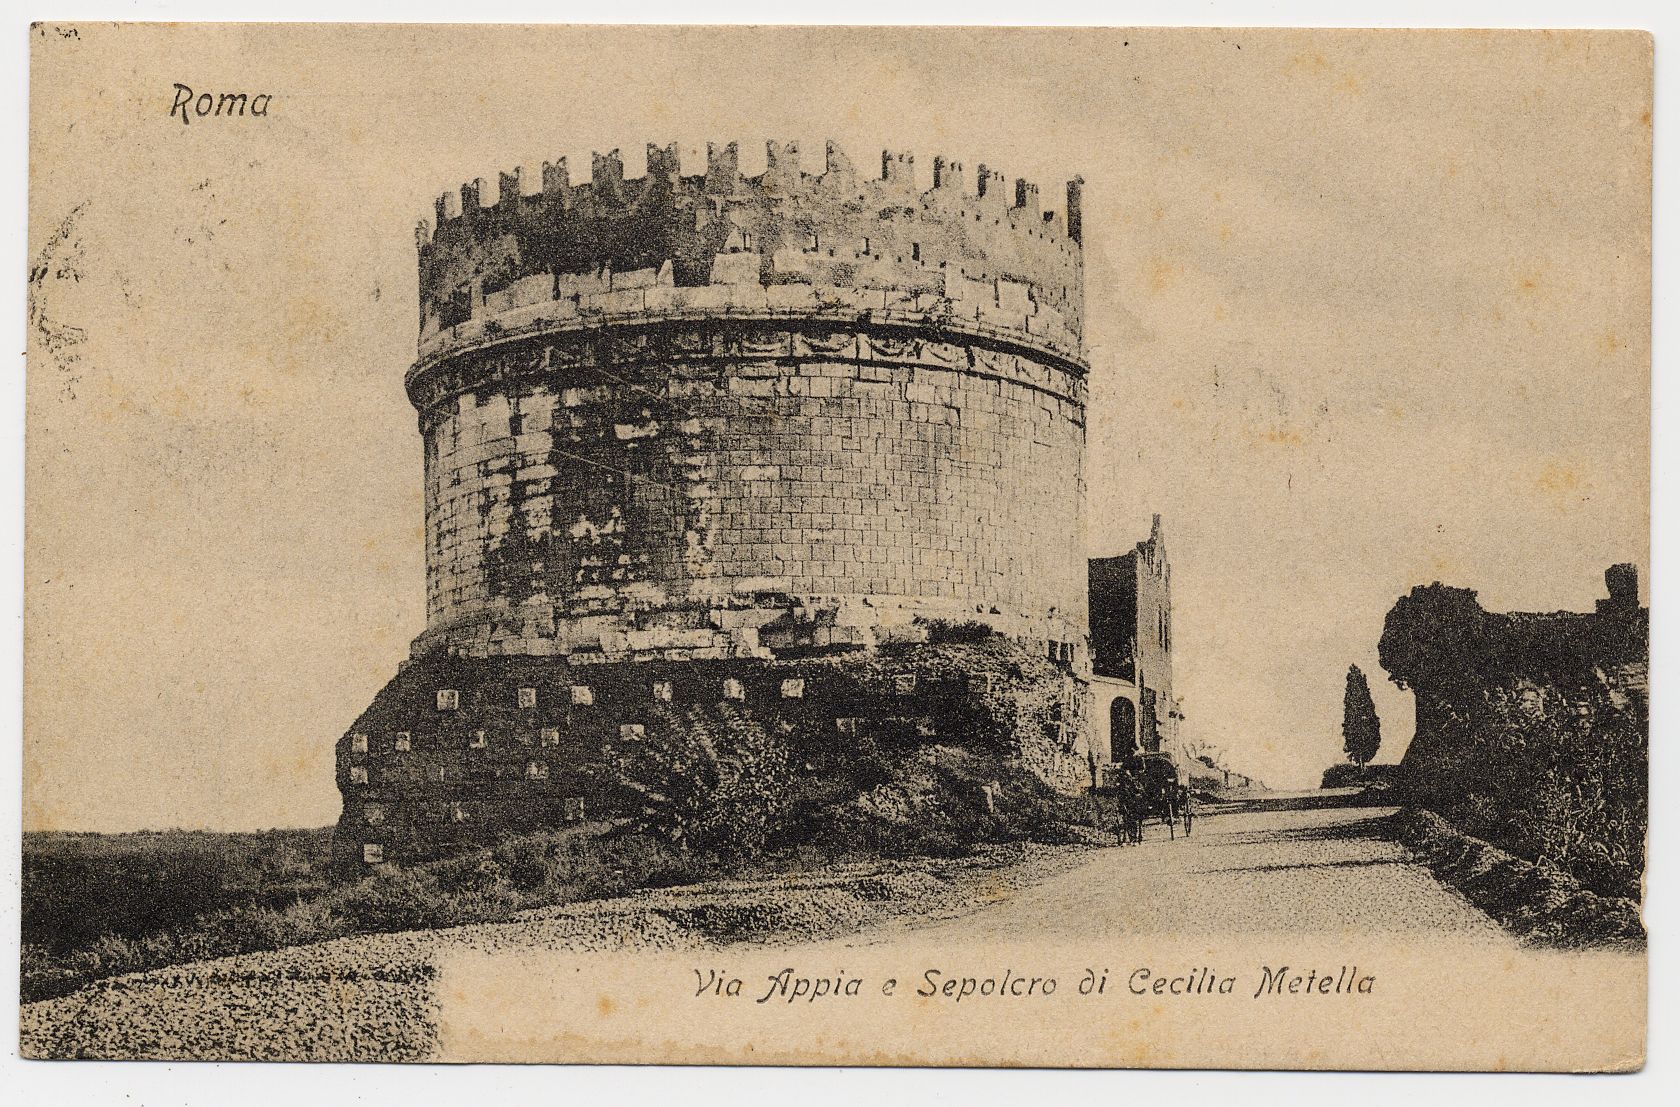 Cartolina con immagine del Sepolcro di Cecilia Metella e della via Appia Antica